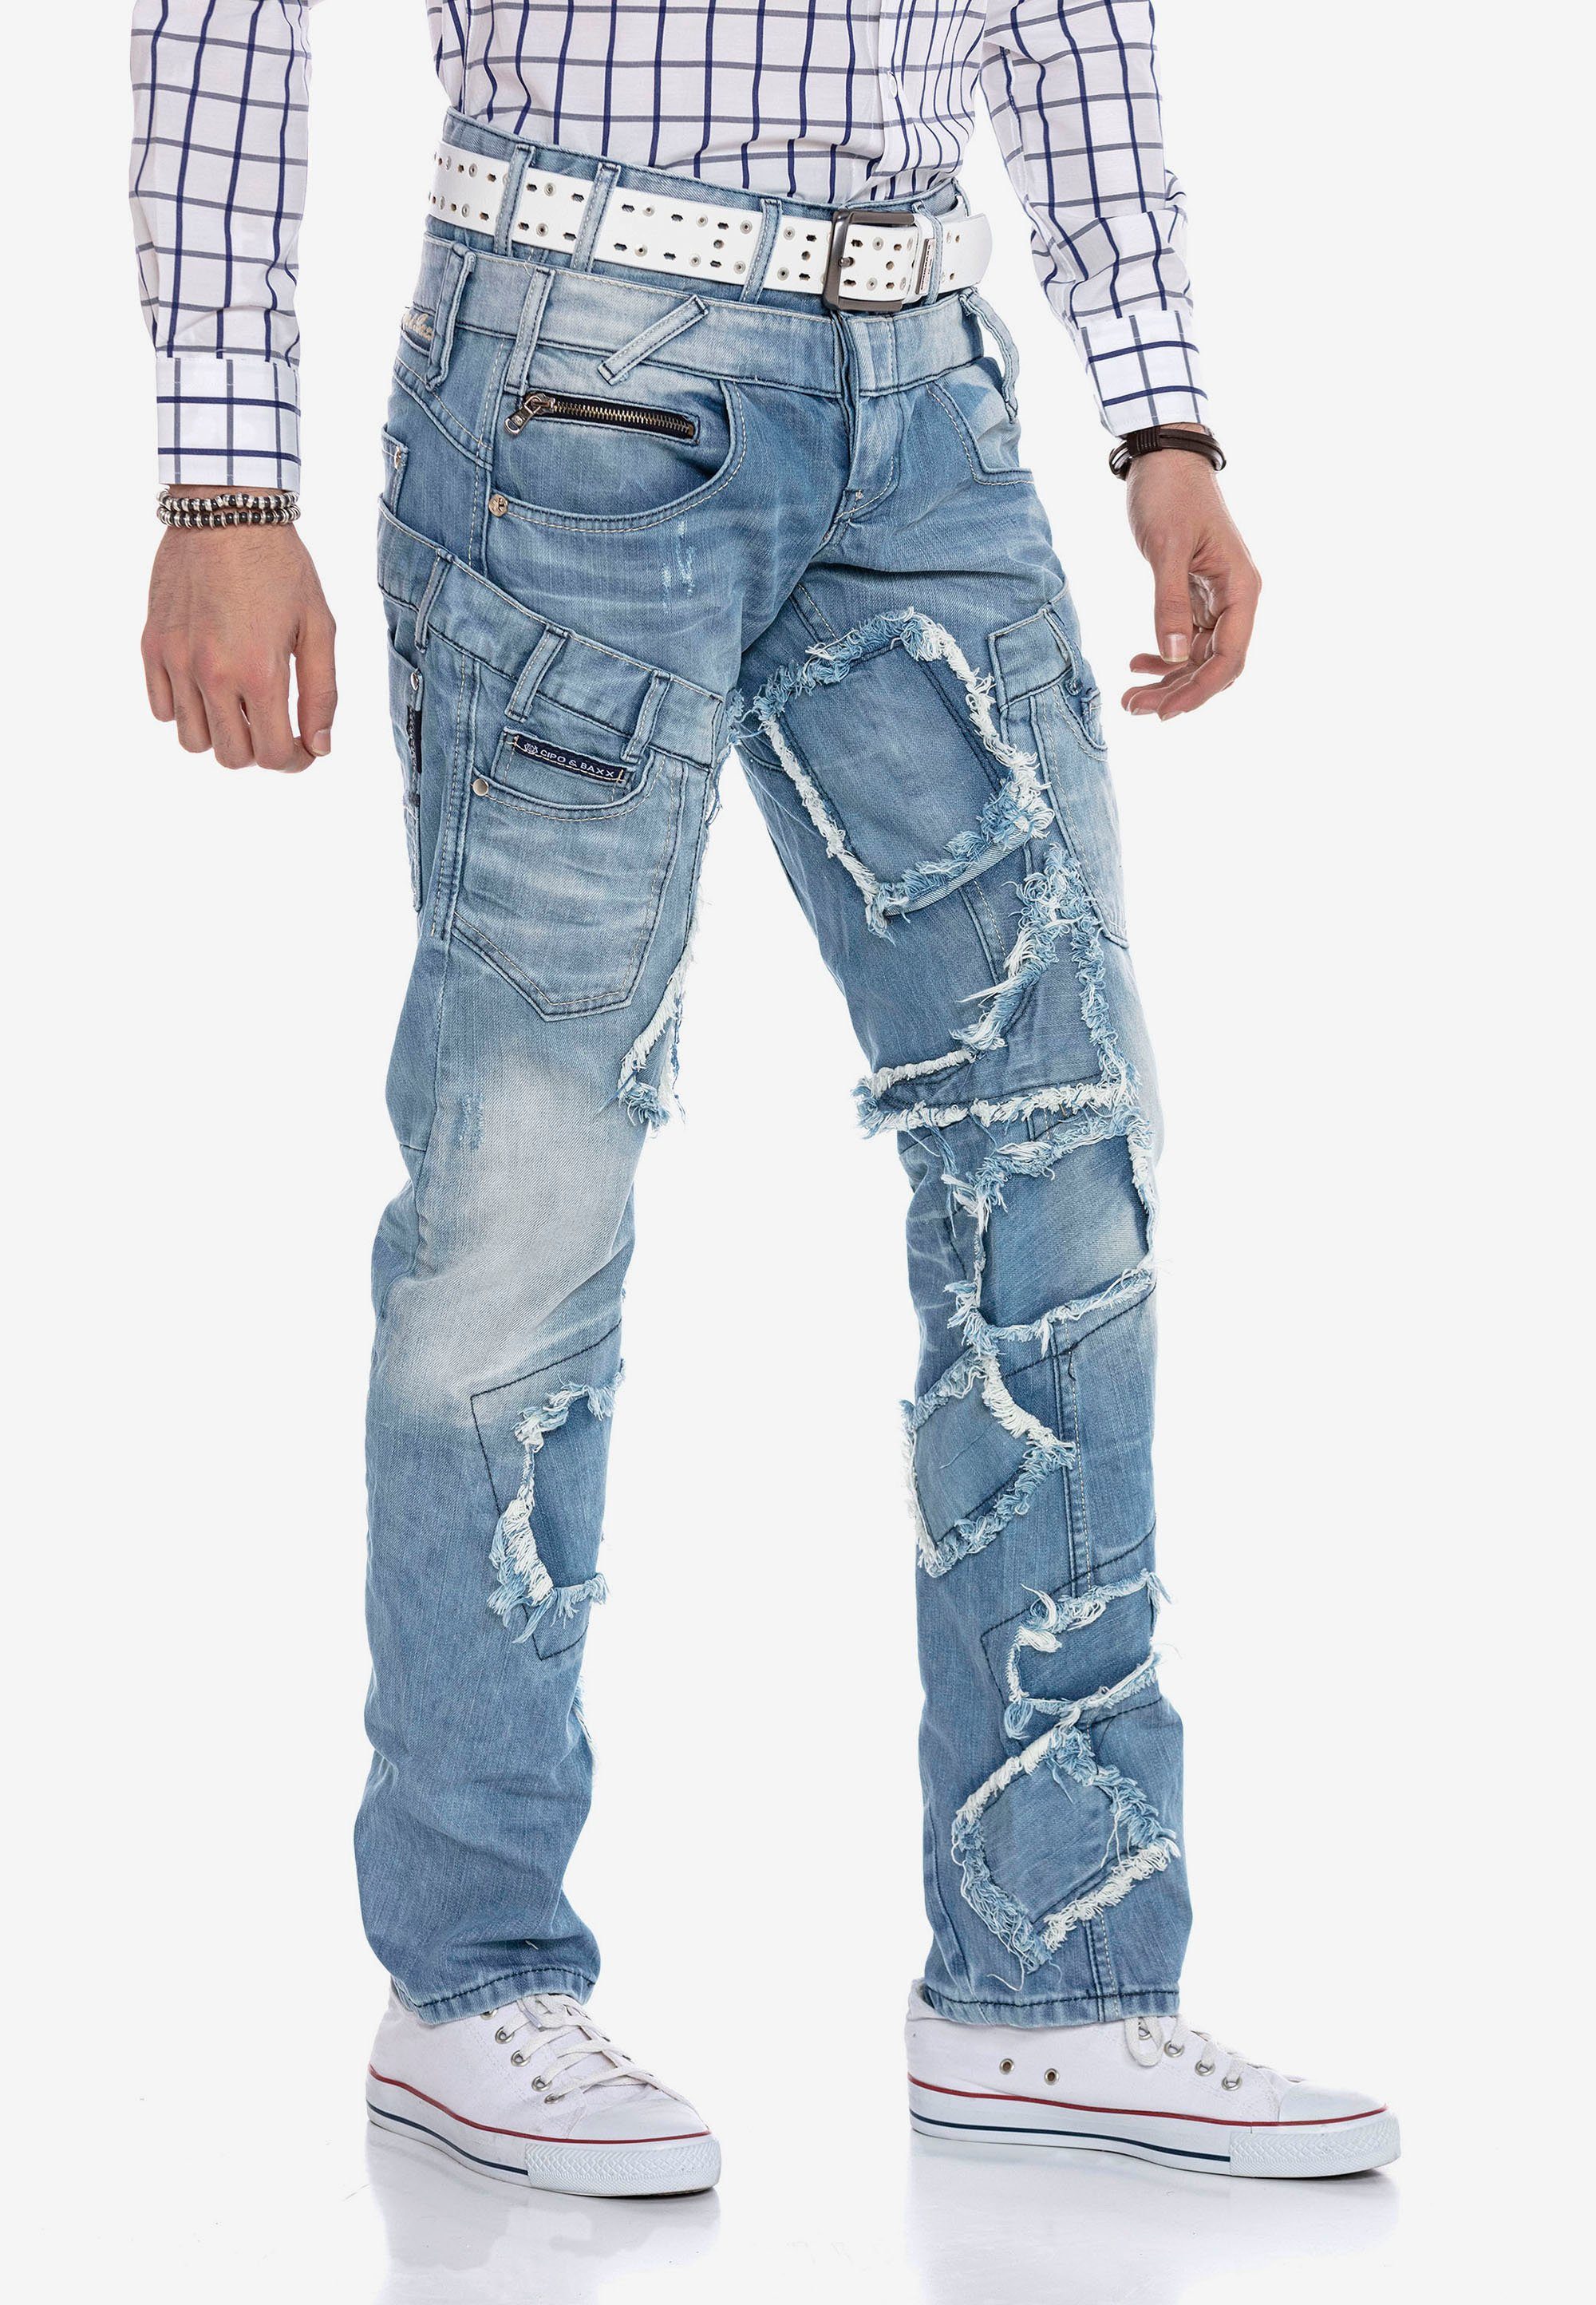 Patchwork-Design im Jeans & Baxx Bequeme trendigen Cipo